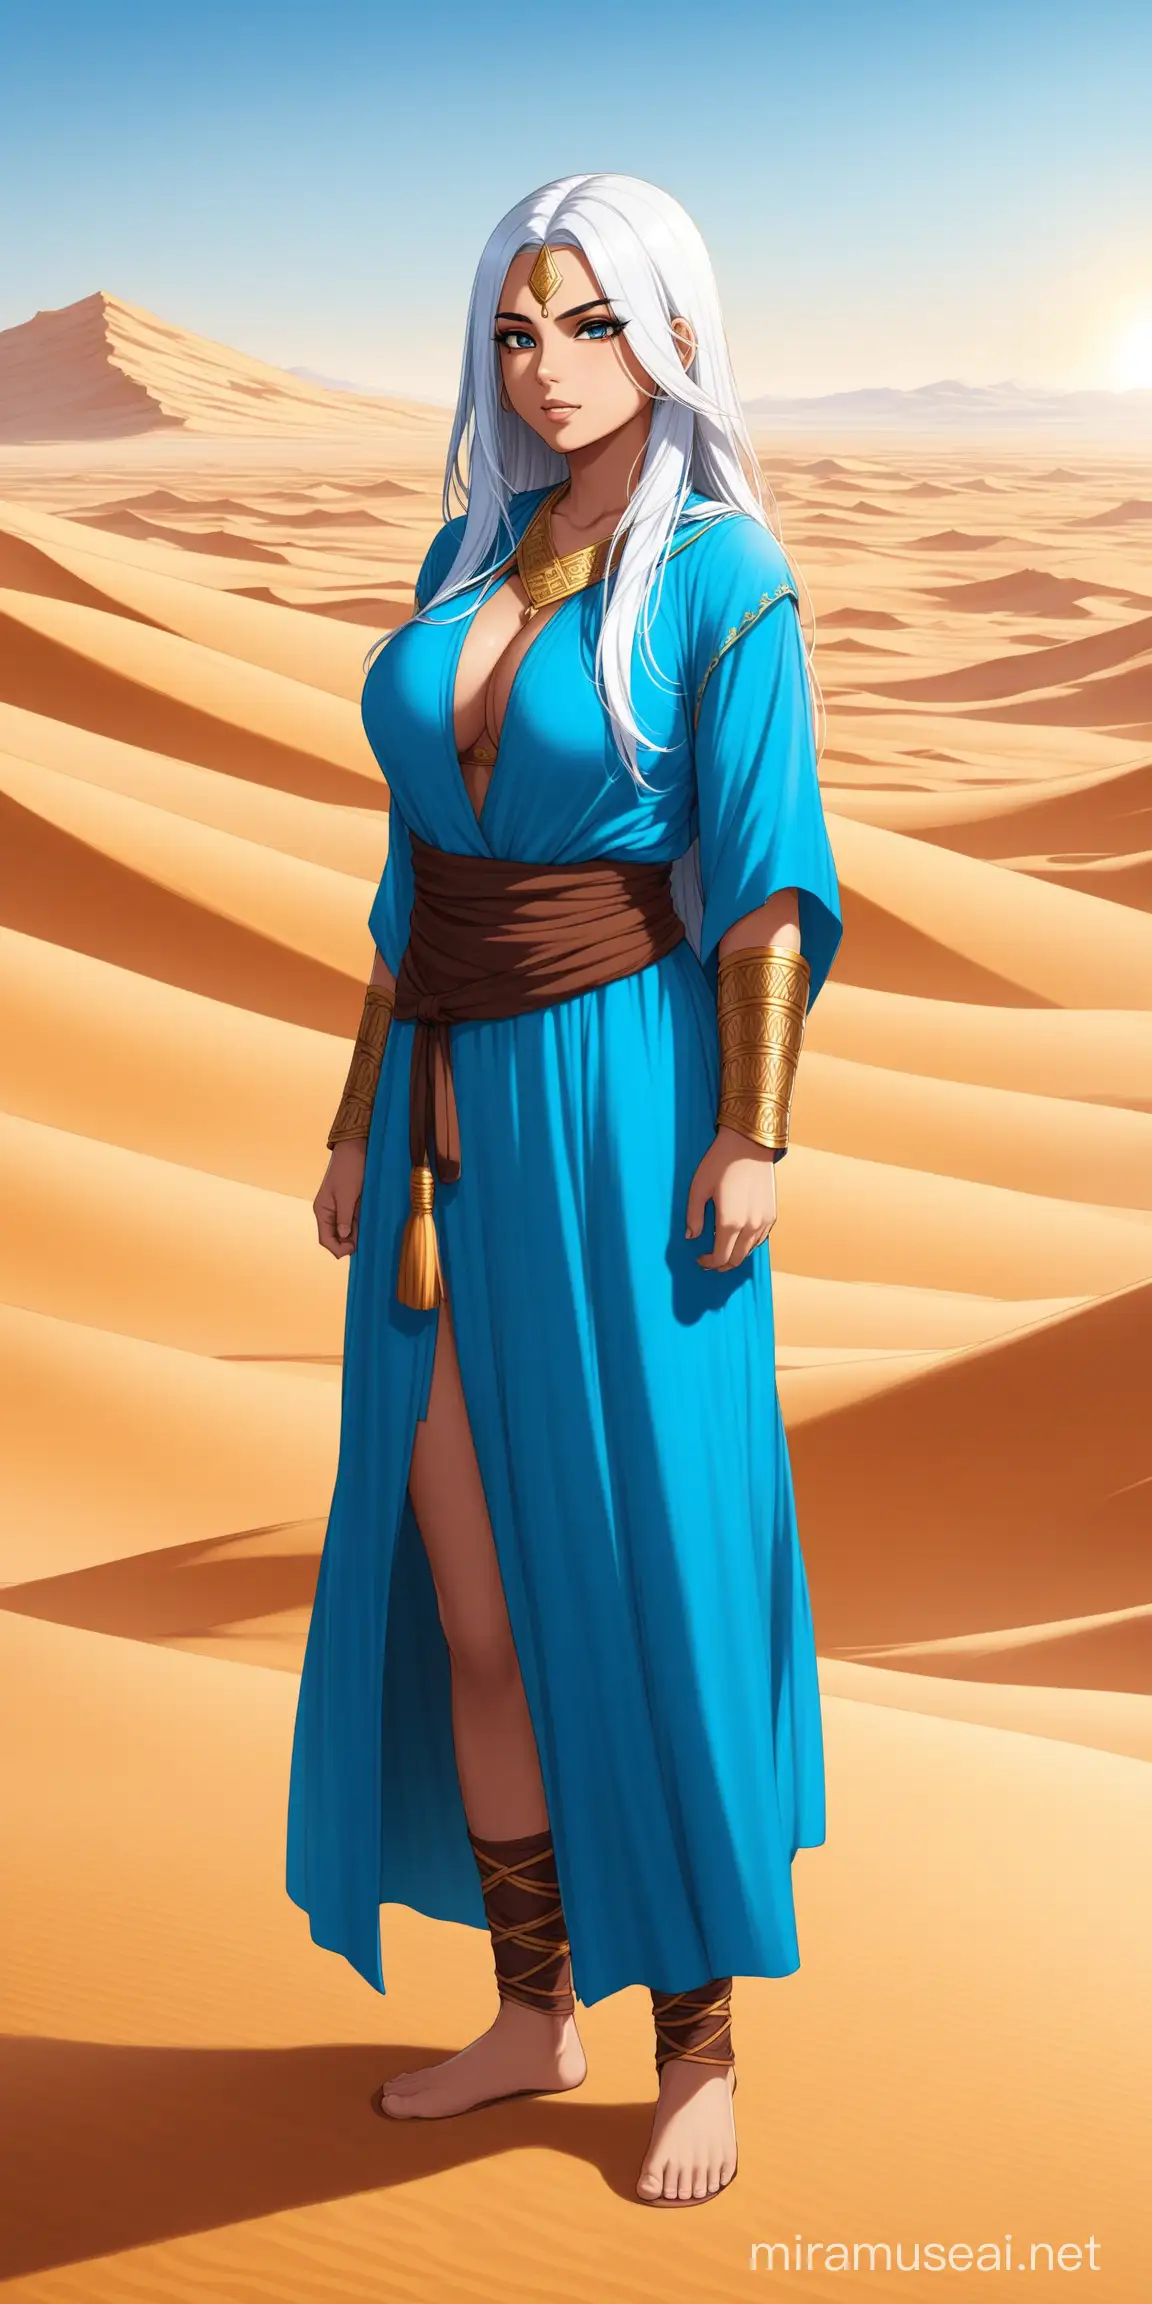 Female, arab girl, big chest, warrior monk, blue robe, white hair, standing, long hair, desert background